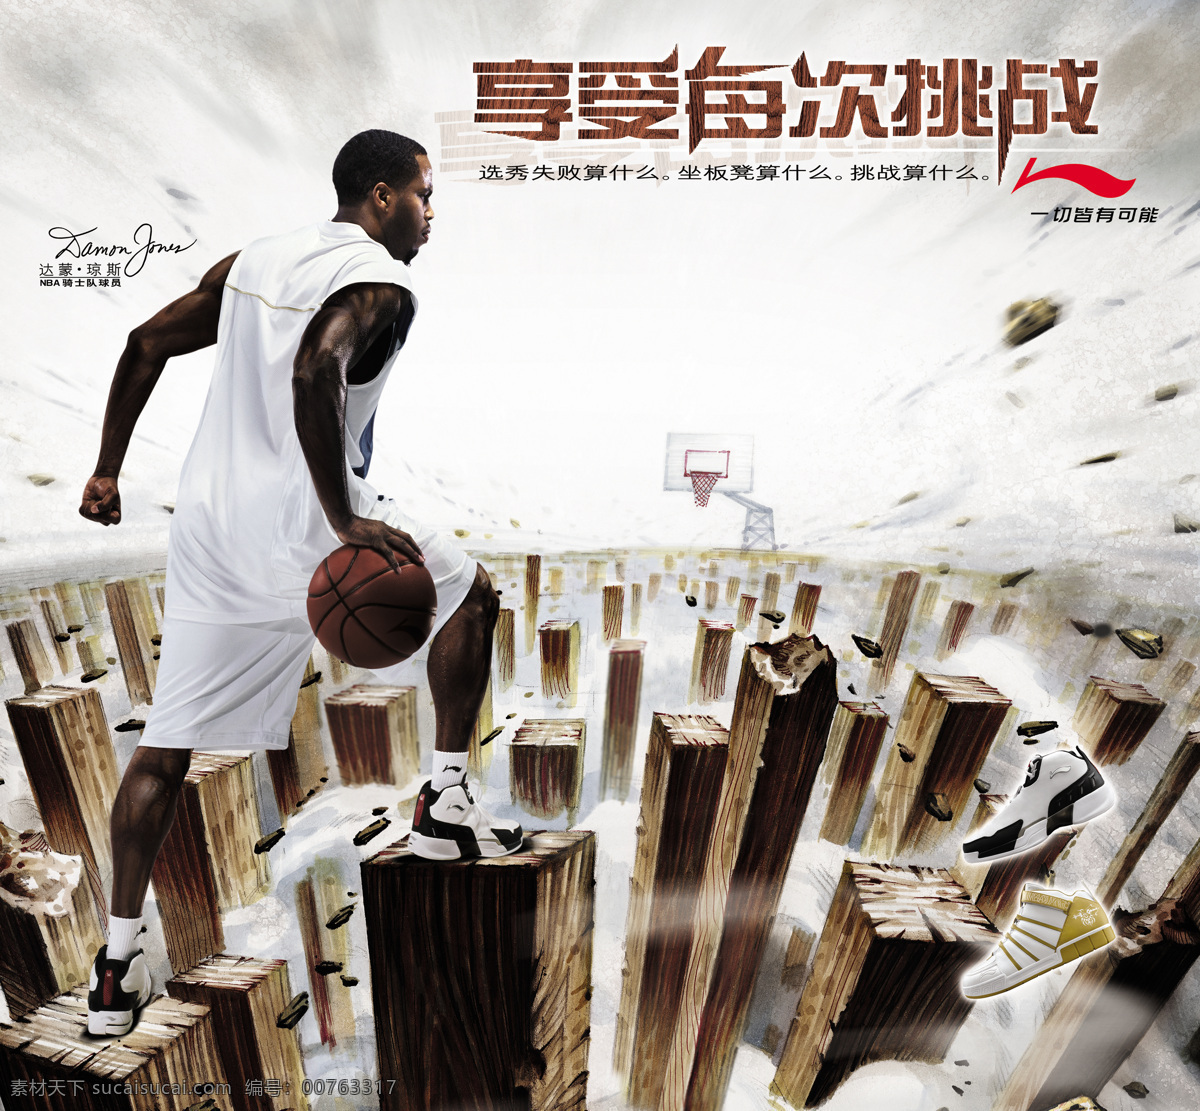 国际 著名 运动 品牌 李宁 logo 李宁平面广告 nba 骑士队 球员 琼斯 篮球运动 篮球鞋 平面广告